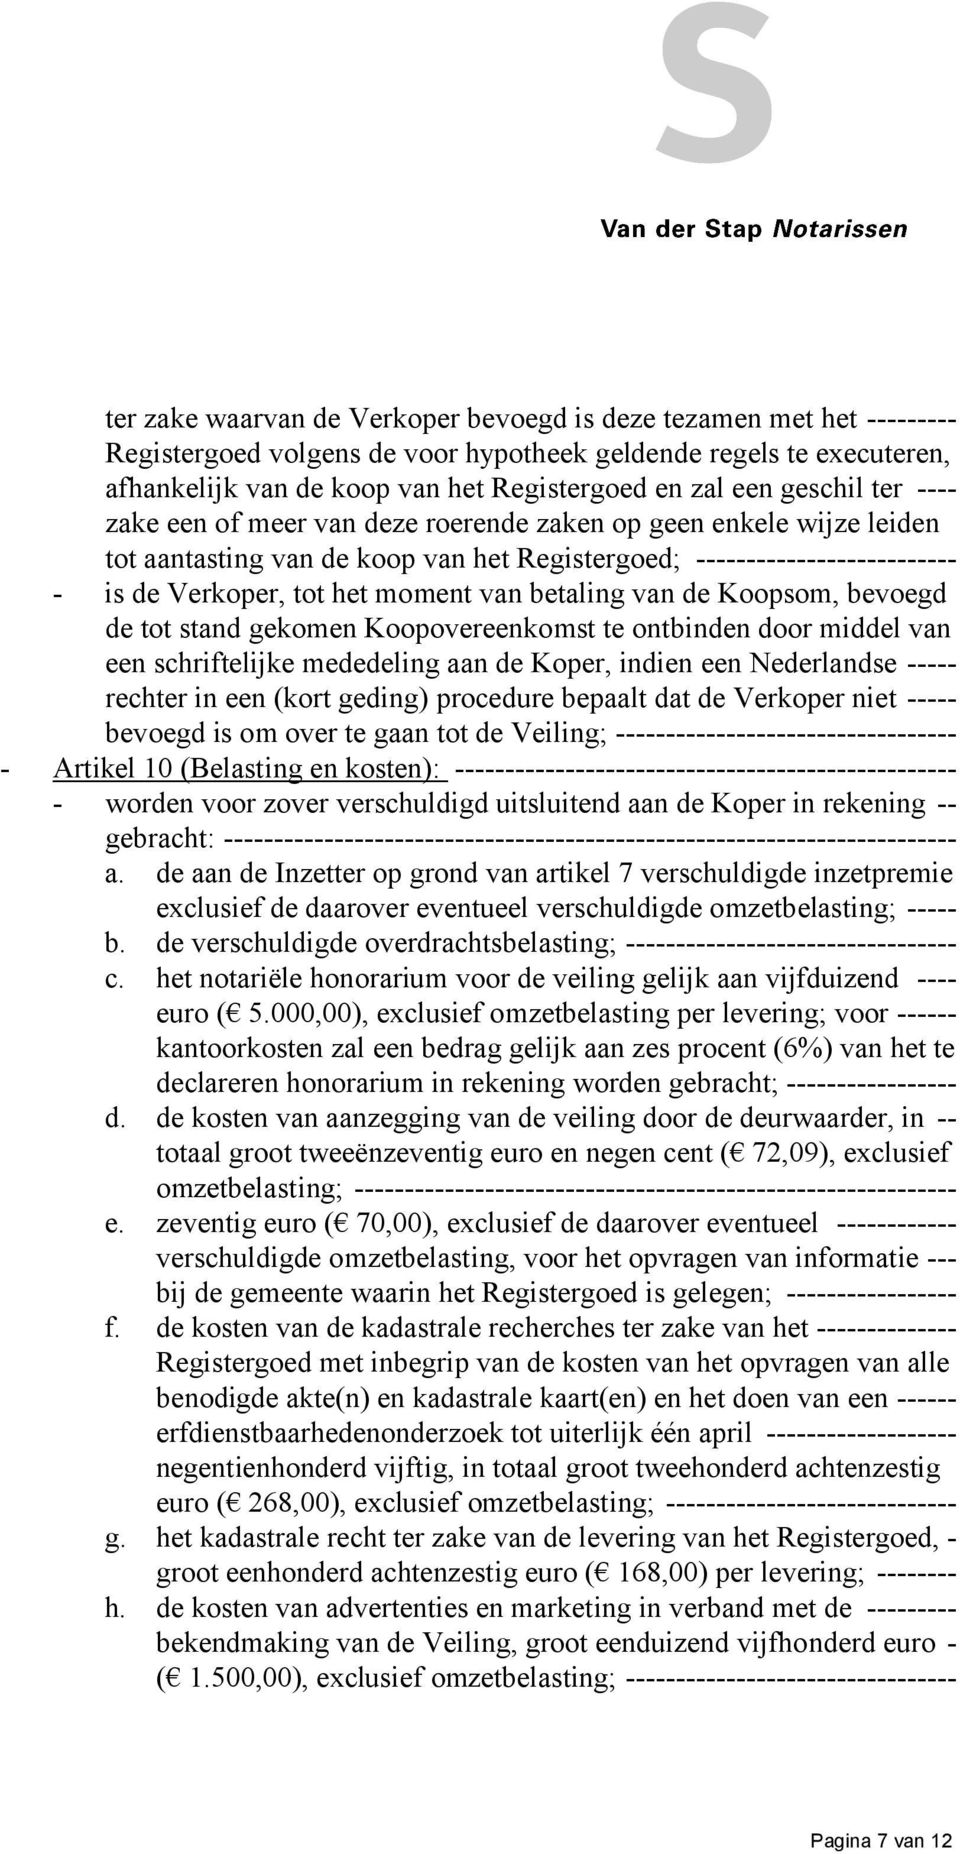 betaling van de Koopsom, bevoegd de tot stand gekomen Koopovereenkomst te ontbinden door middel van een schriftelijke mededeling aan de Koper, indien een Nederlandse ----- rechter in een (kort